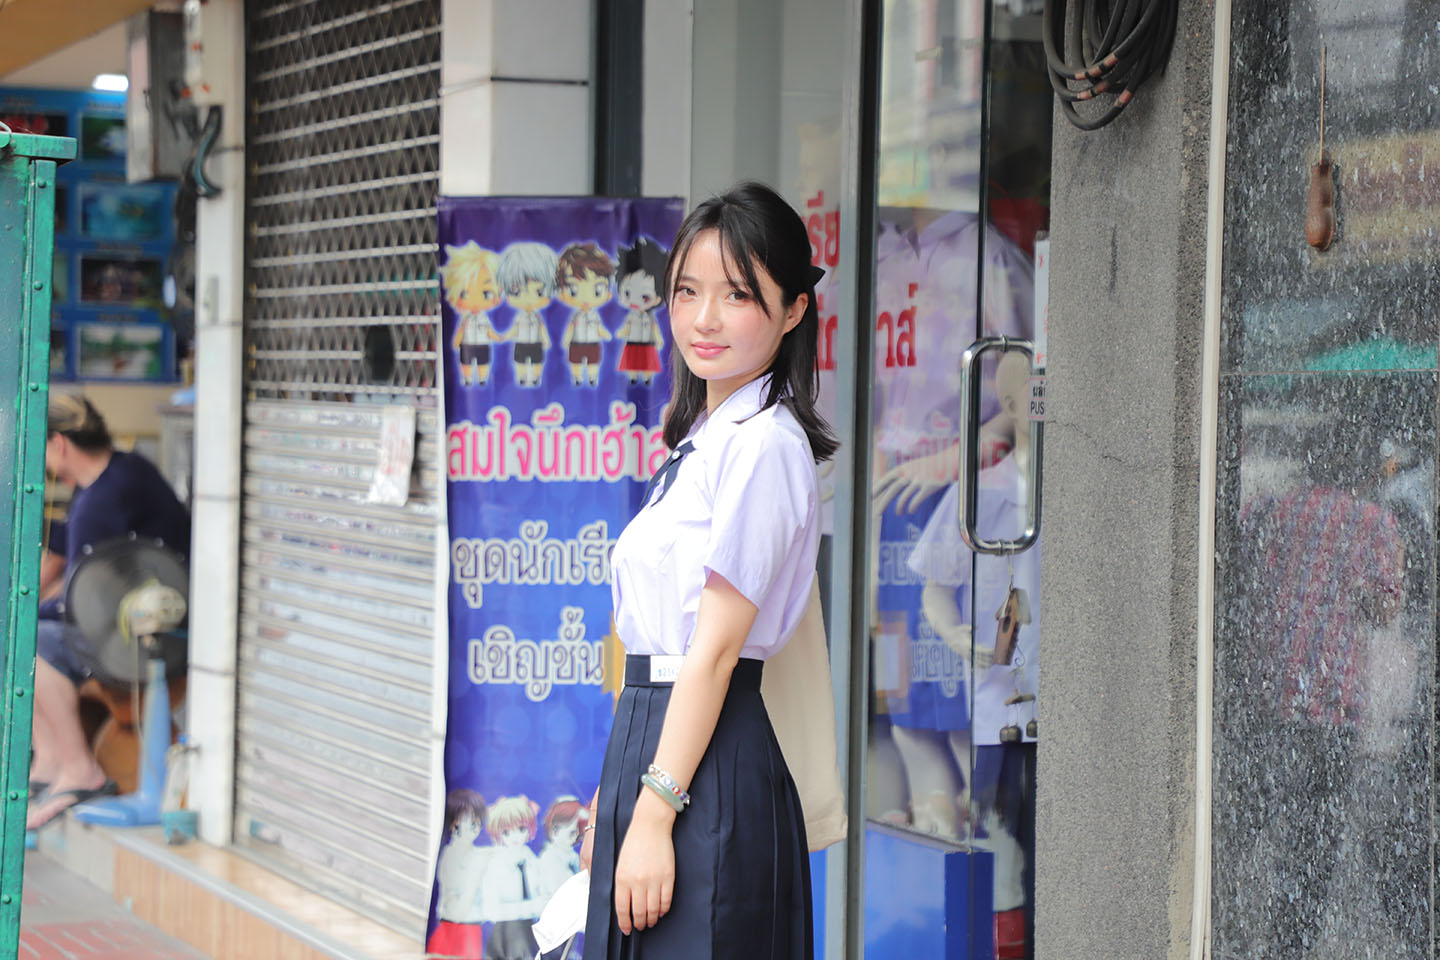 schoolgirl uniforms3